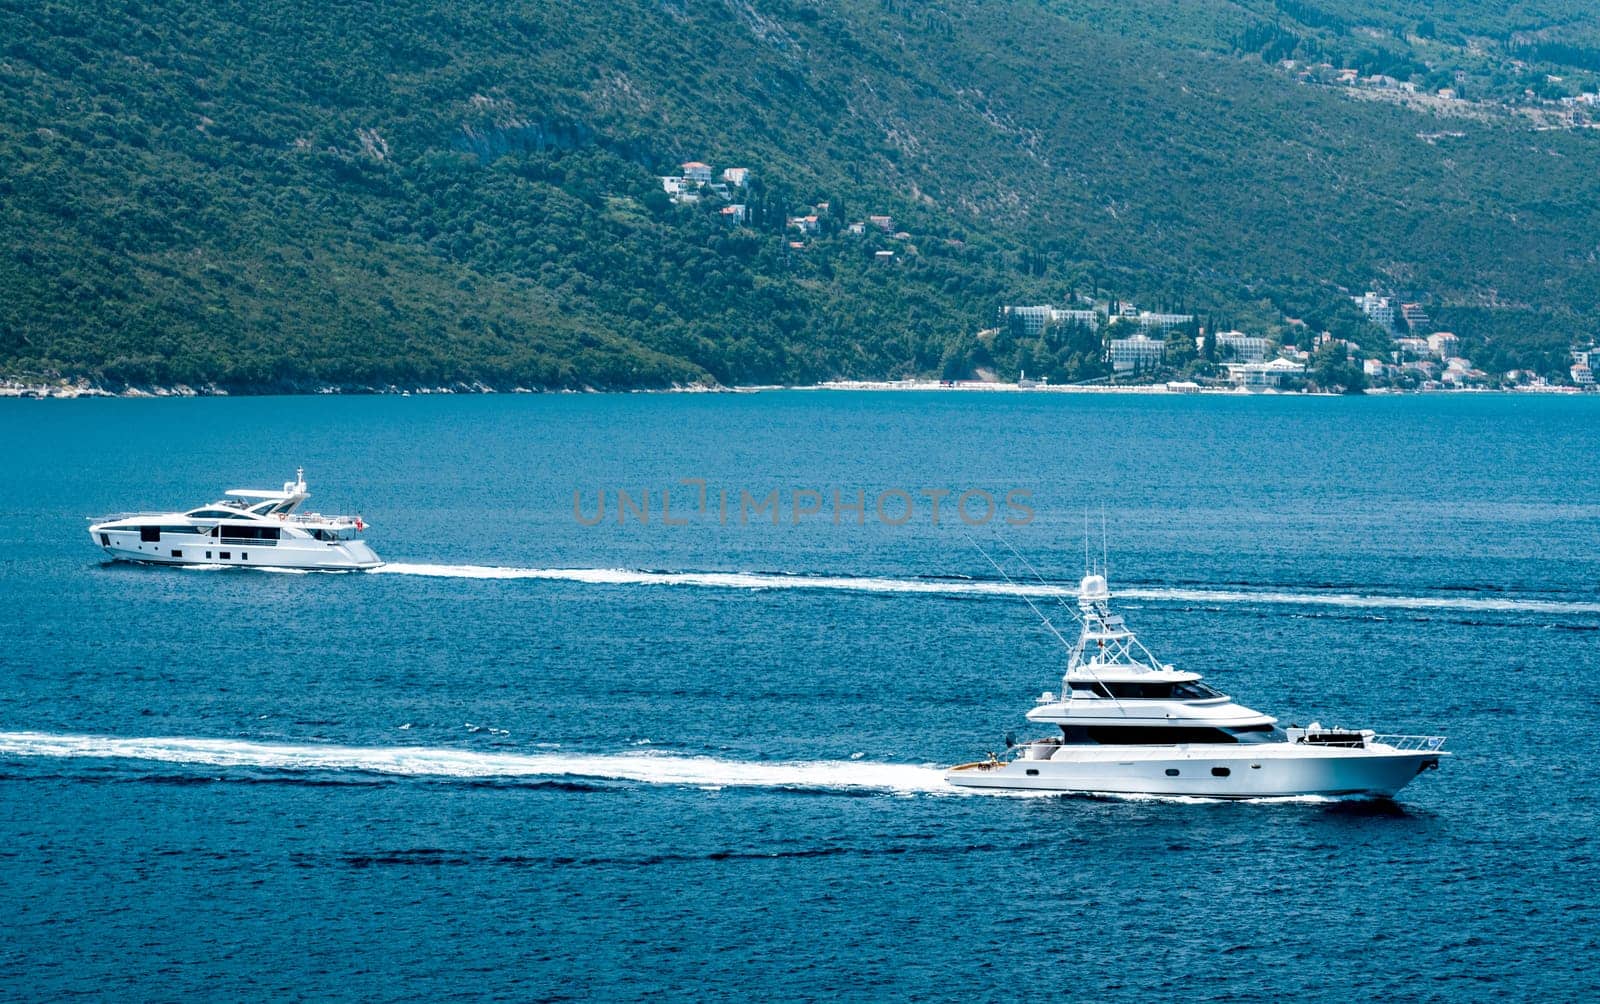 Boat in Adriatic sea, Montenegro by GekaSkr